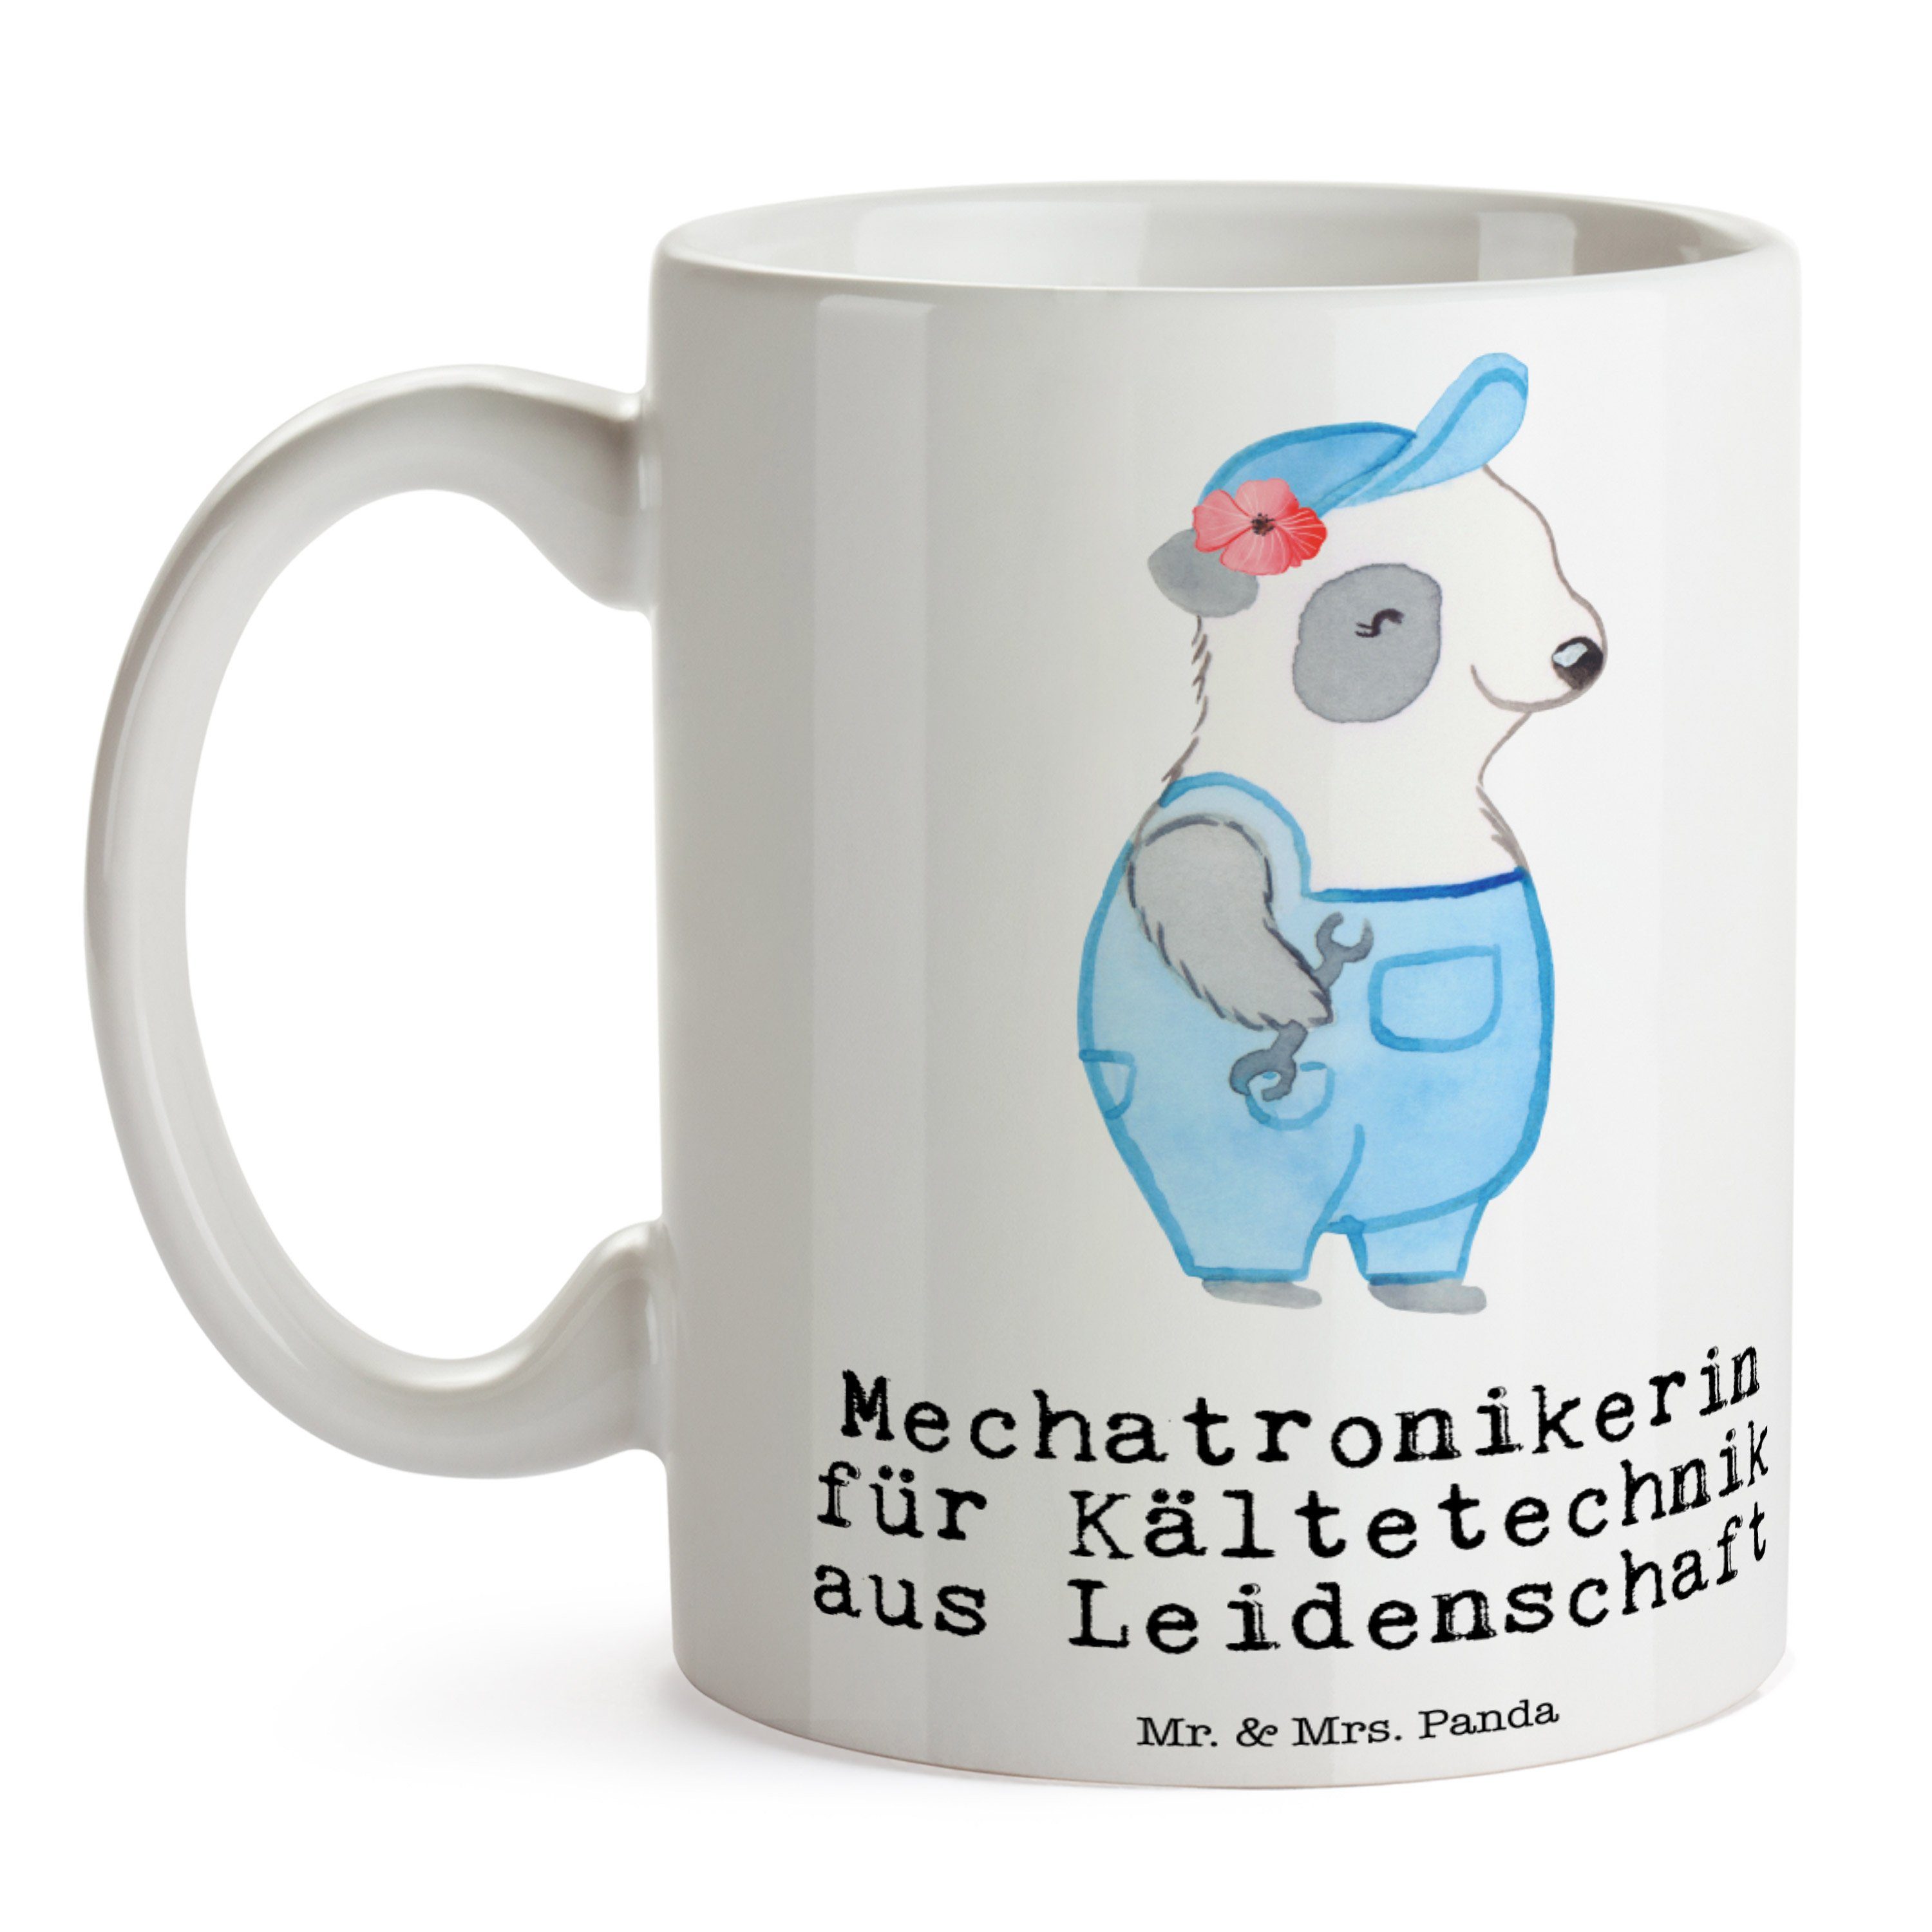 aus Mr. - Mechatronikerin Leidenschaft & Kältetechnik Weiß Geschenk, Tasse Panda - Keramik für Mrs.